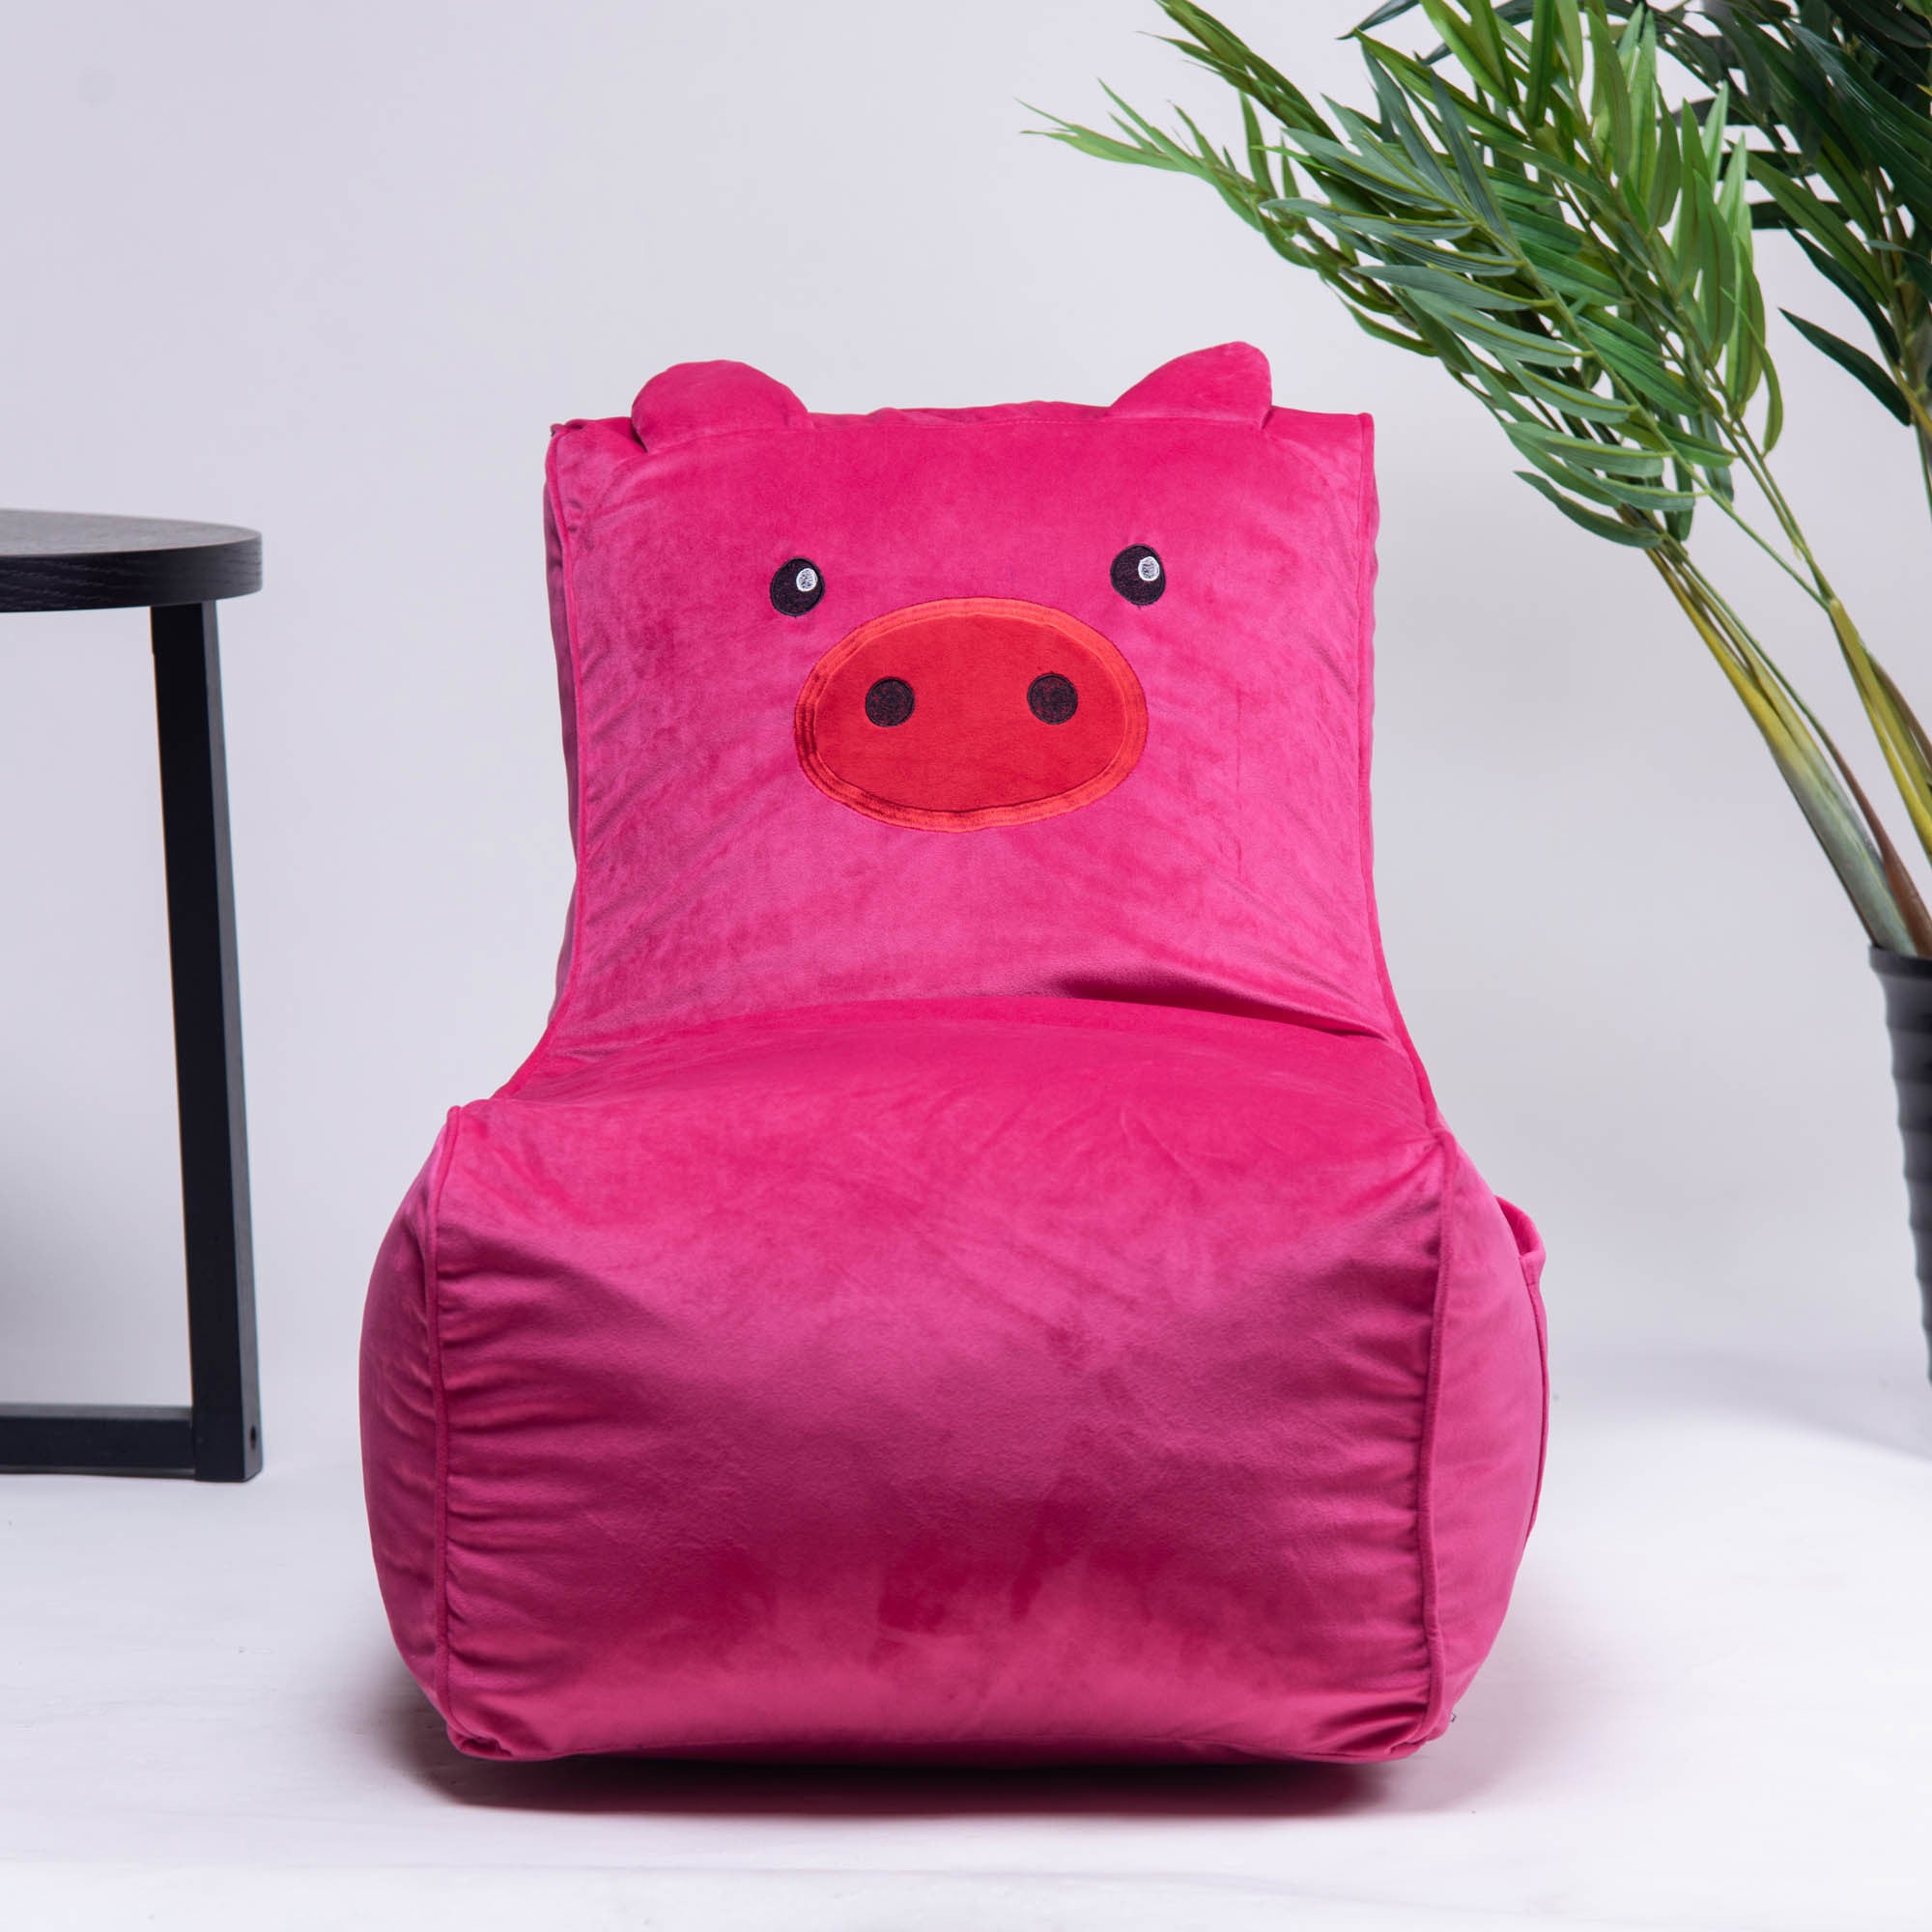 Ultra Soft Bean Bag Chair